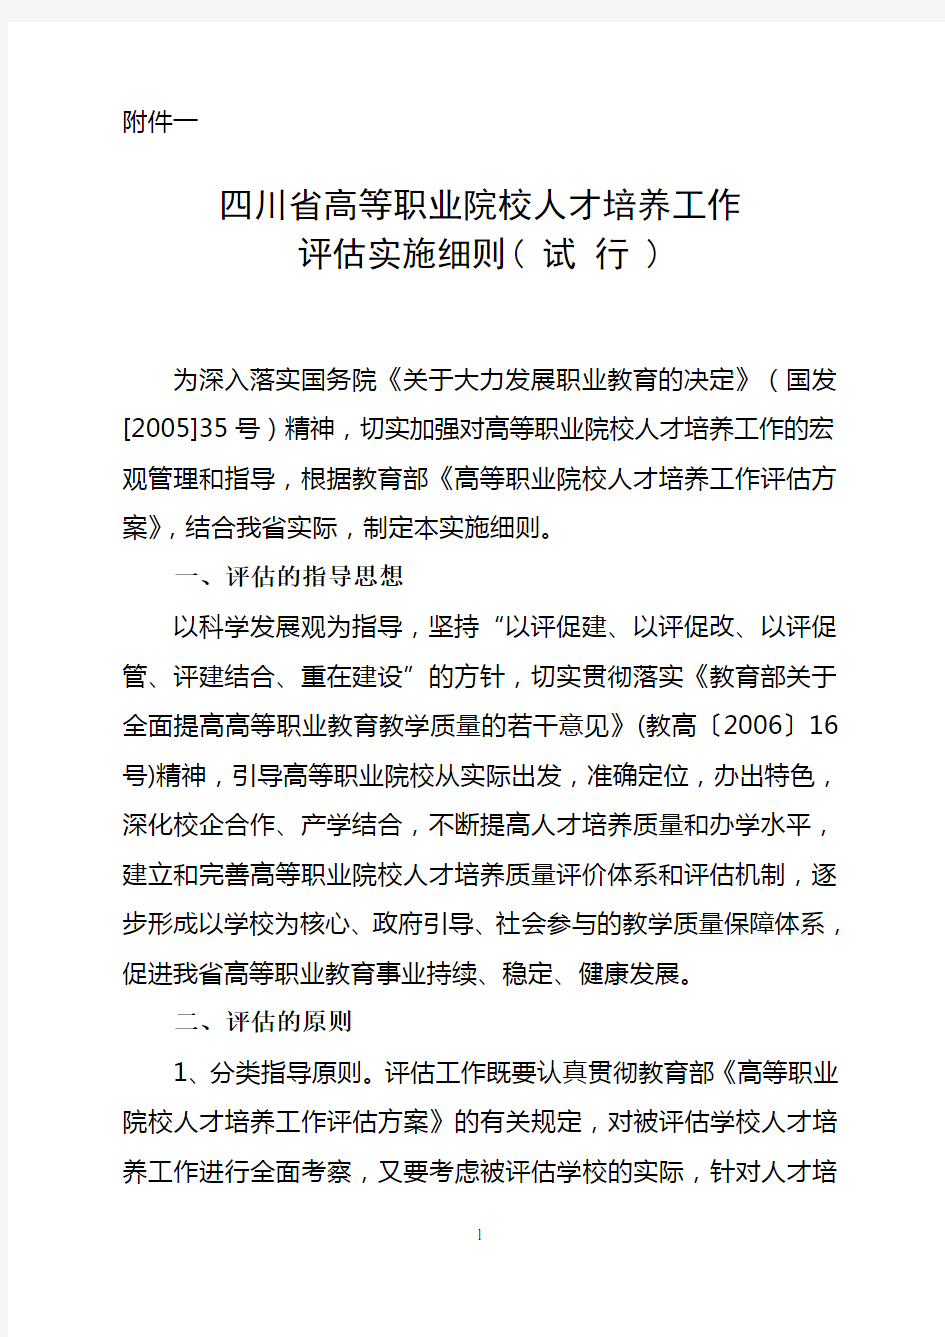 四川省高等职业院校人才培养工作评估实施细则